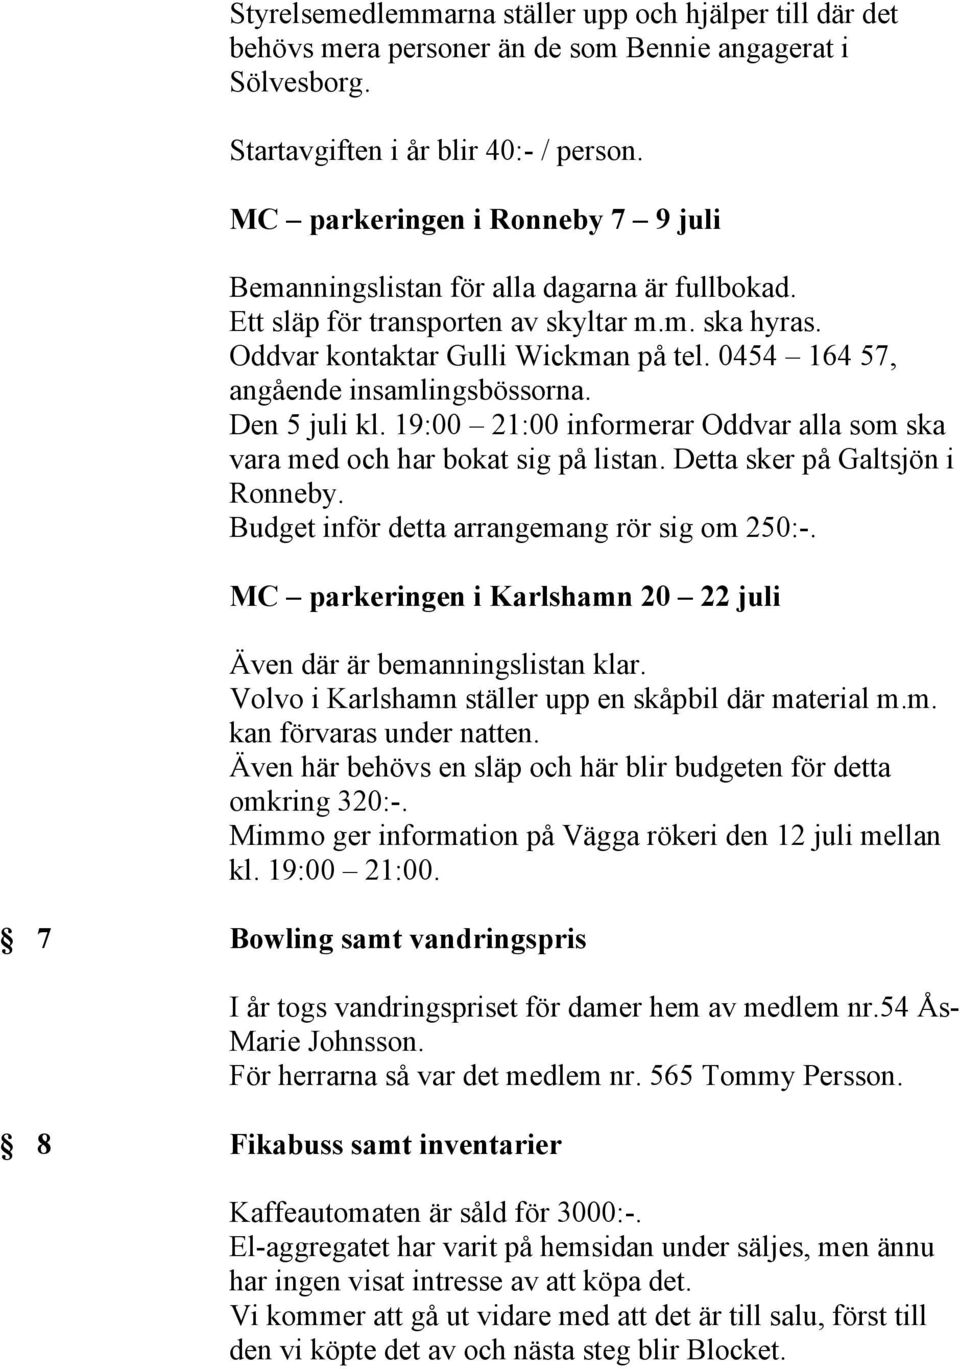 0454 164 57, angående insamlingsbössorna. Den 5 juli kl. 19:00 21:00 informerar Oddvar alla som ska vara med och har bokat sig på listan. Detta sker på Galtsjön i Ronneby.